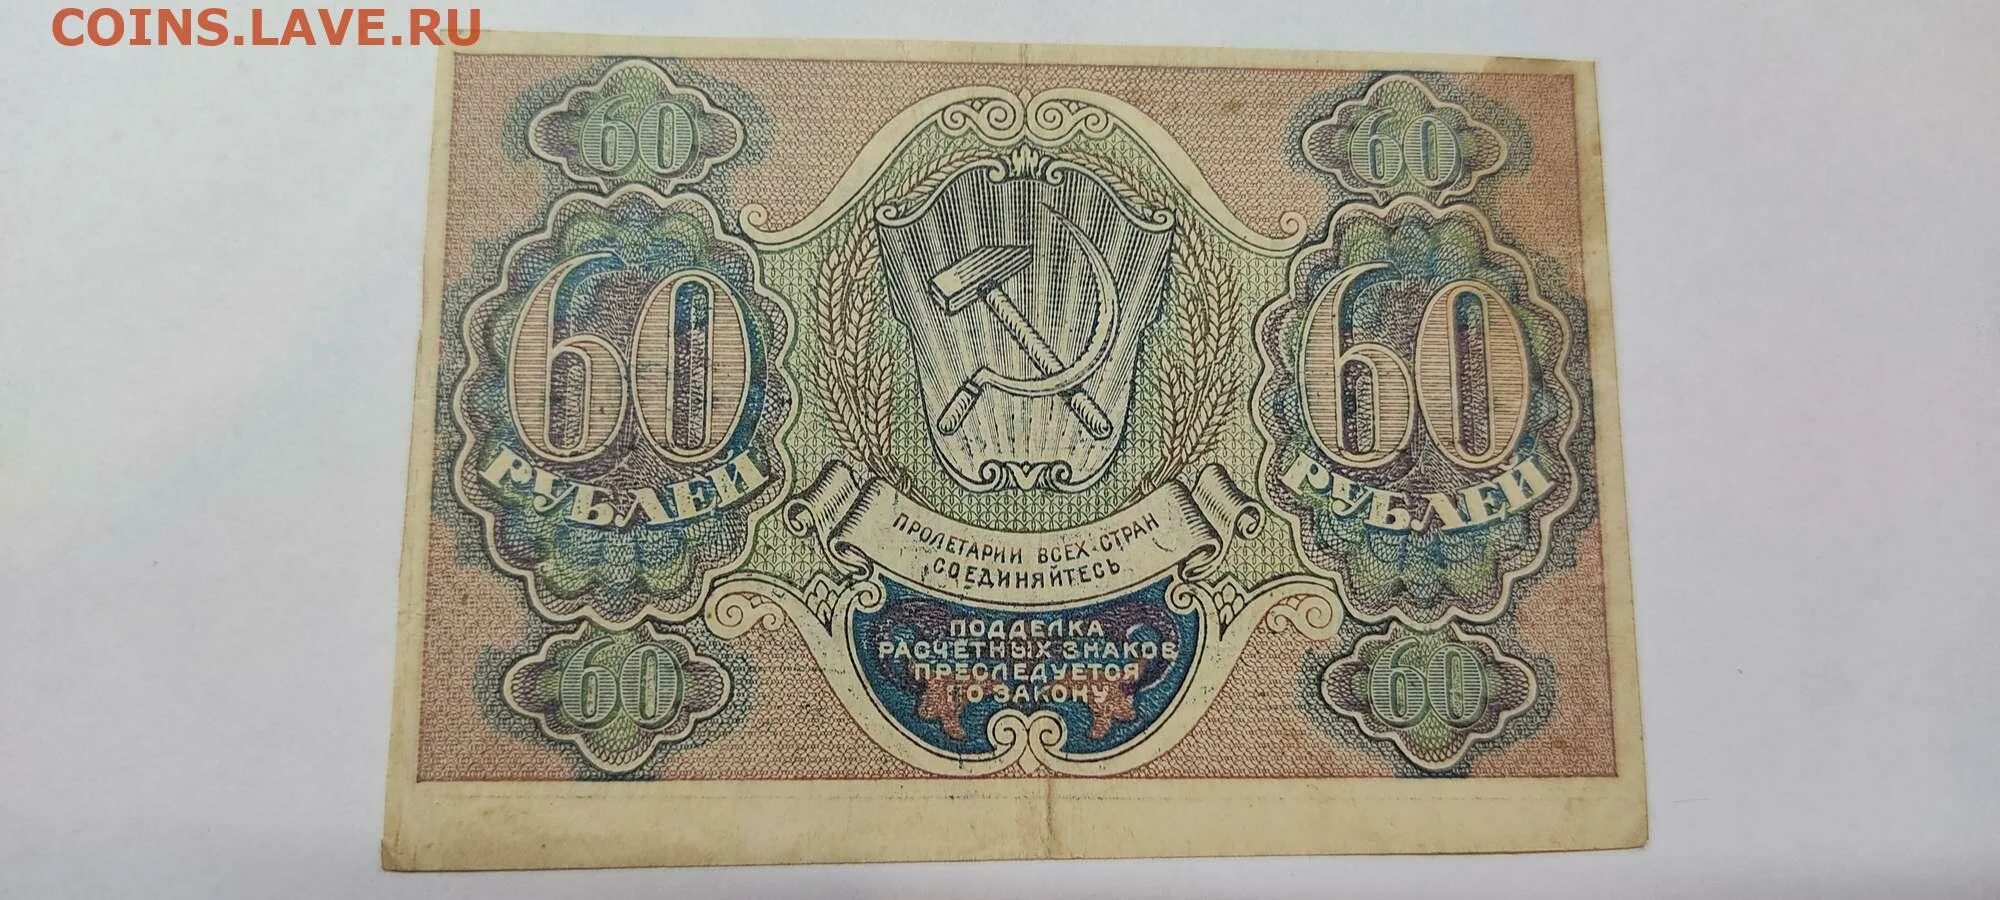 56 рублей 60. 60 Рублей. Расчетный знак 60 рублей. Рубли в 60-х годах XIX В. 60 Рублей фото.